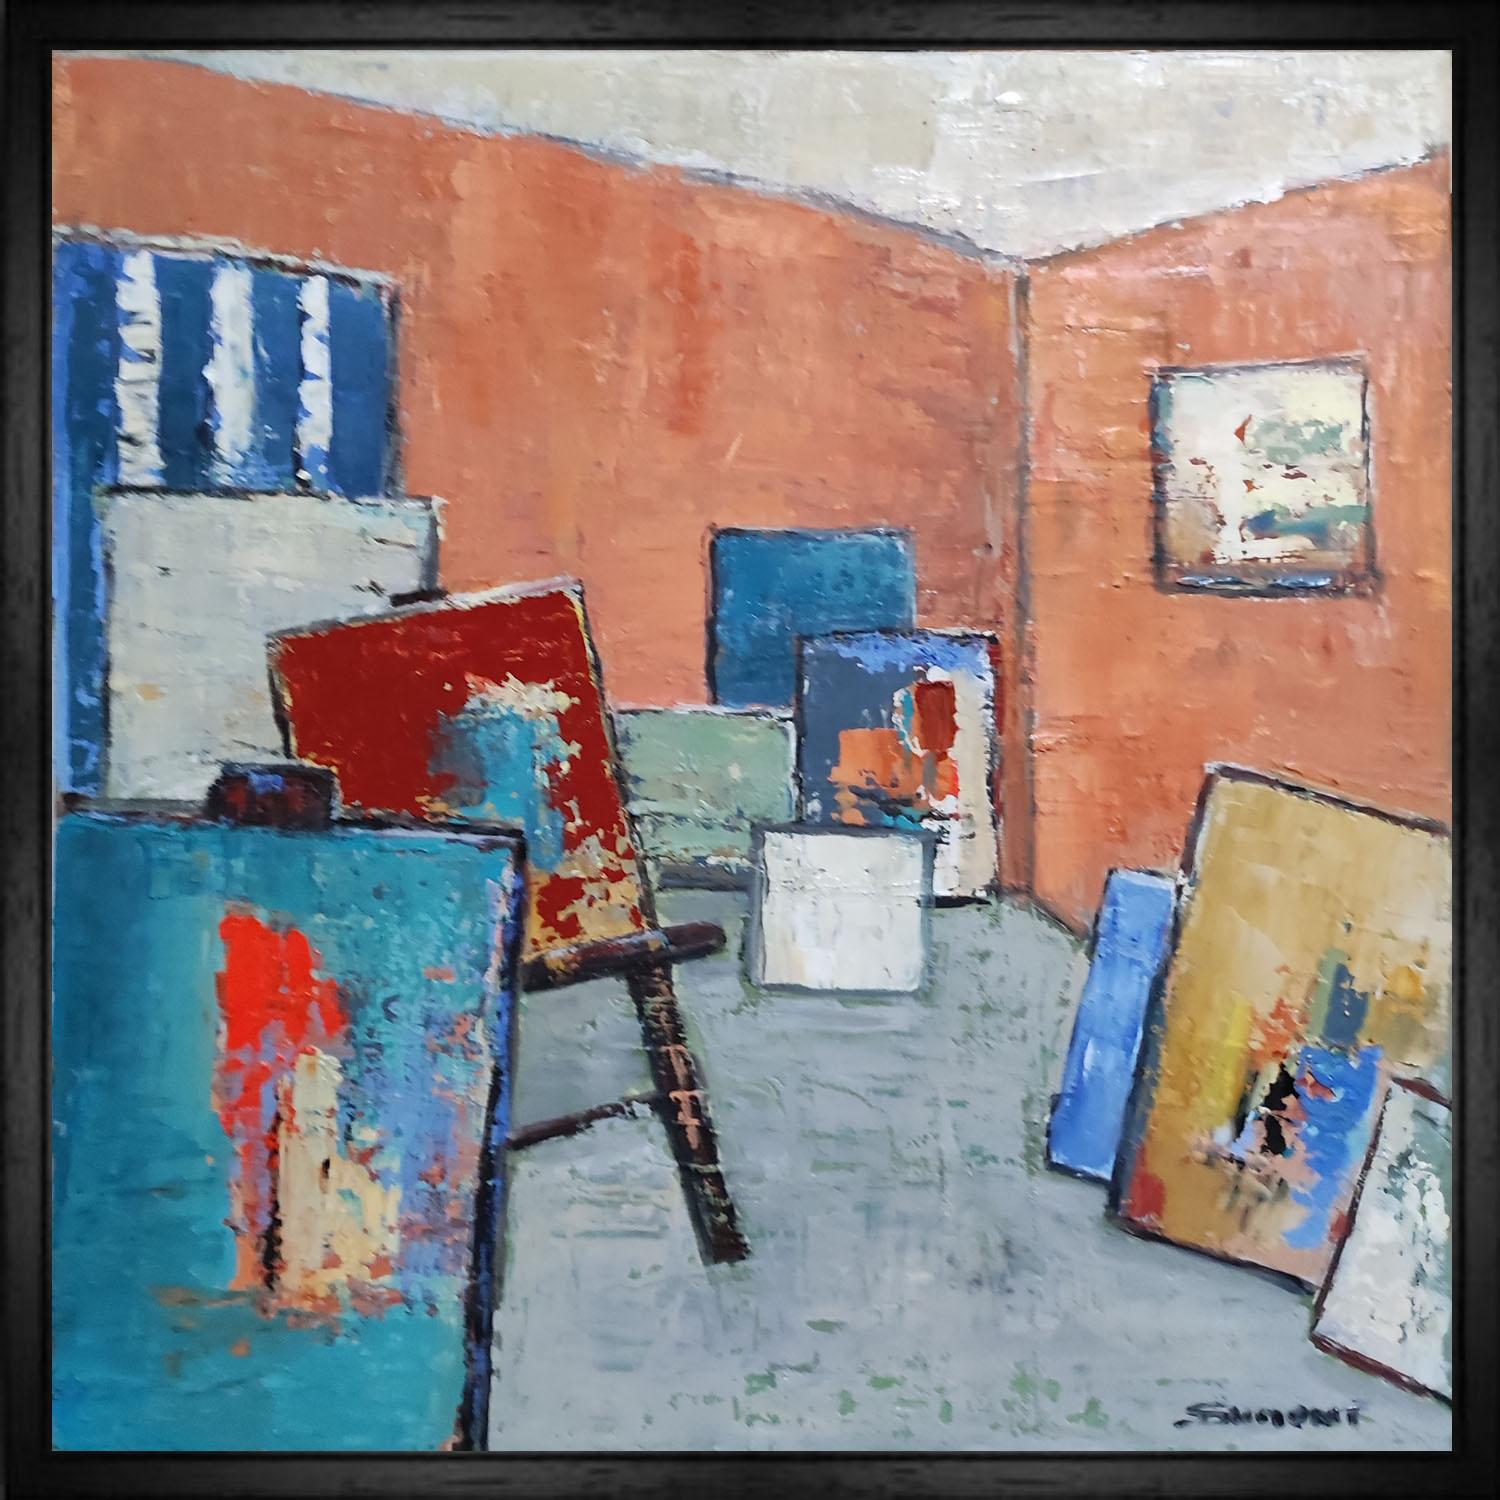 Abstract Painting SOPHIE DUMONT - Atelier 9, nature morte, atelier abstrait, huile sur toile, expressionnisme, français